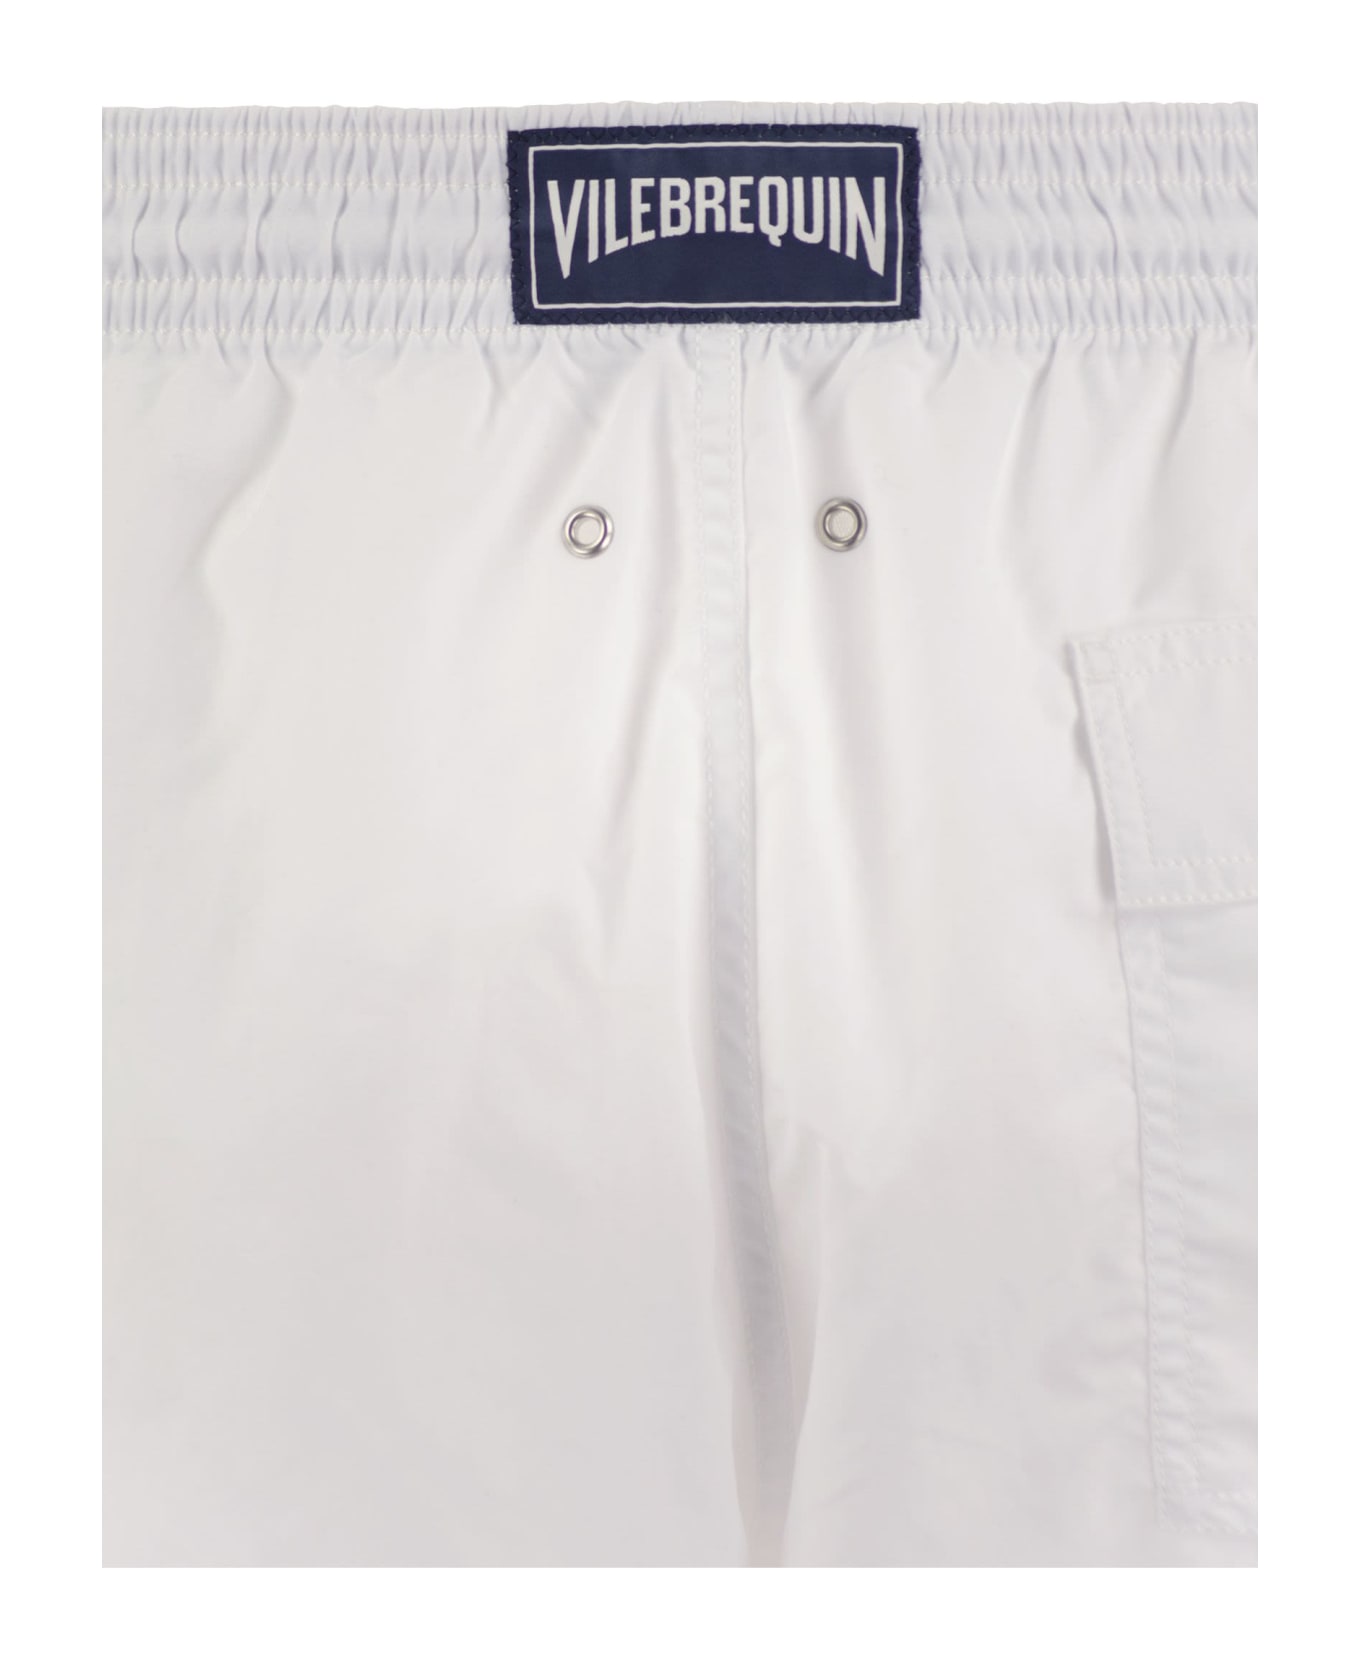 Vilebrequin Plain-coloured Beach Shorts - White